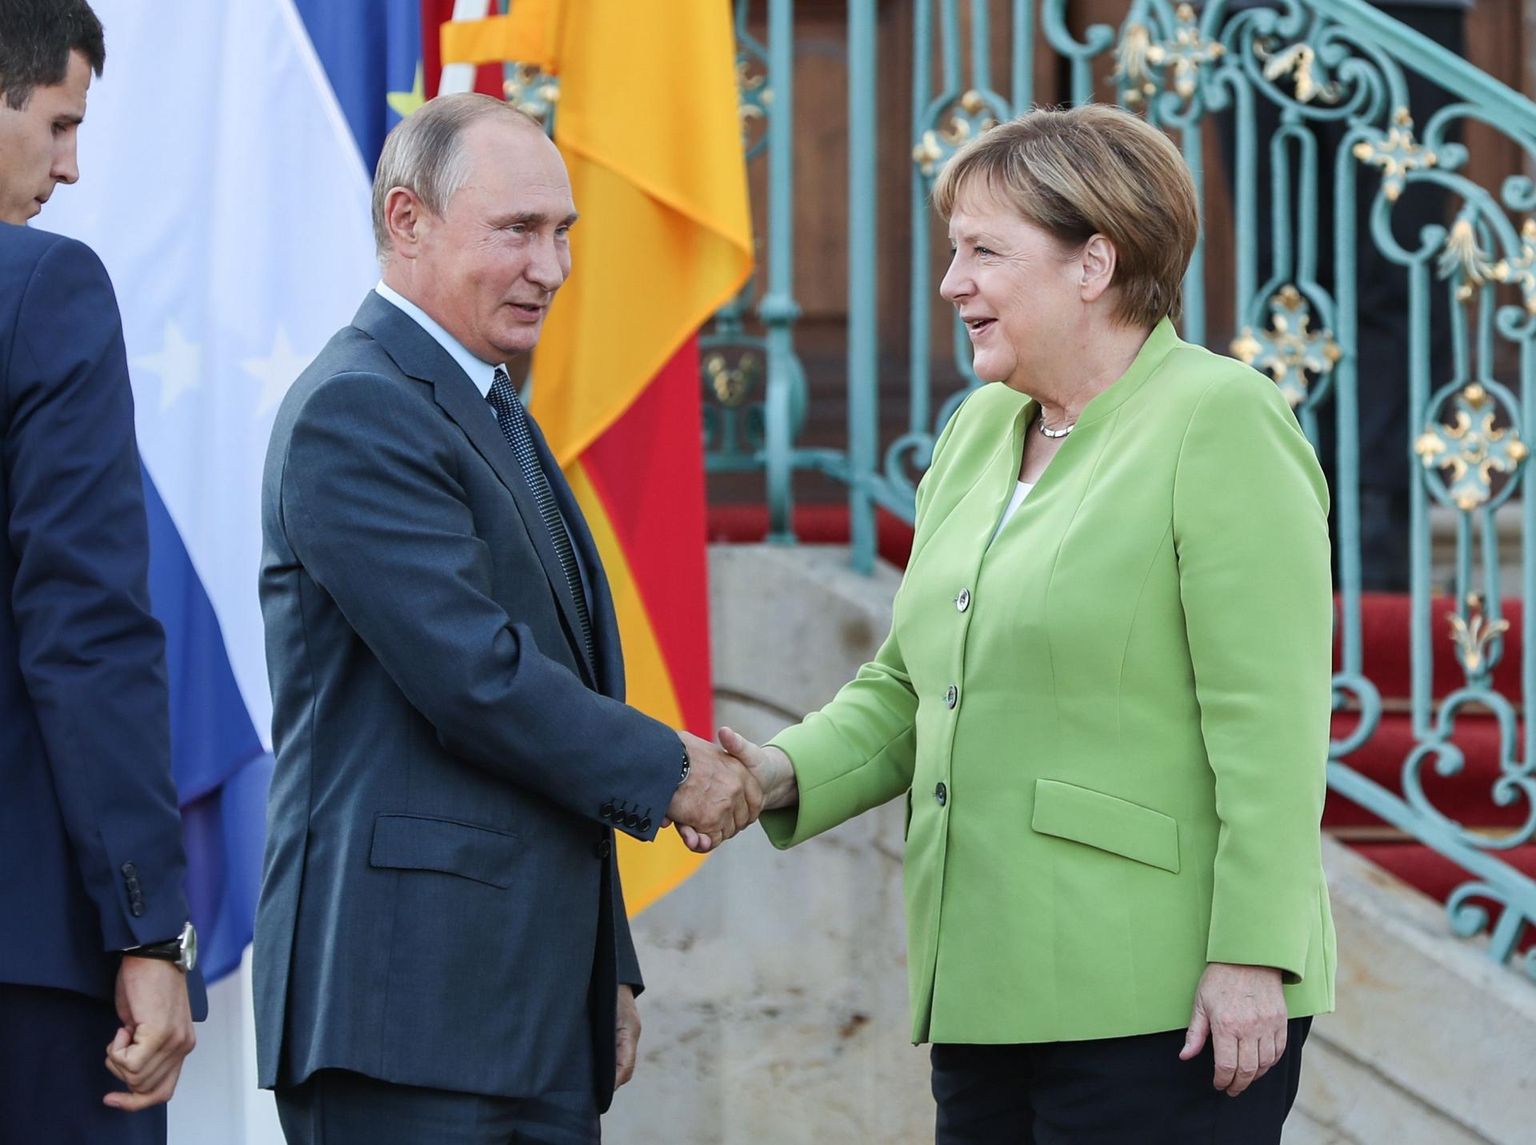 Angela Merkel ja Vladimir Putin Berliinis toimunud kohtumisel 18. augustil 2018. Tollasel kohtumisel arutleti nii poliitilist olukorda Süürias ja Ukrainas kui ka Nord Stream 2 projekti.